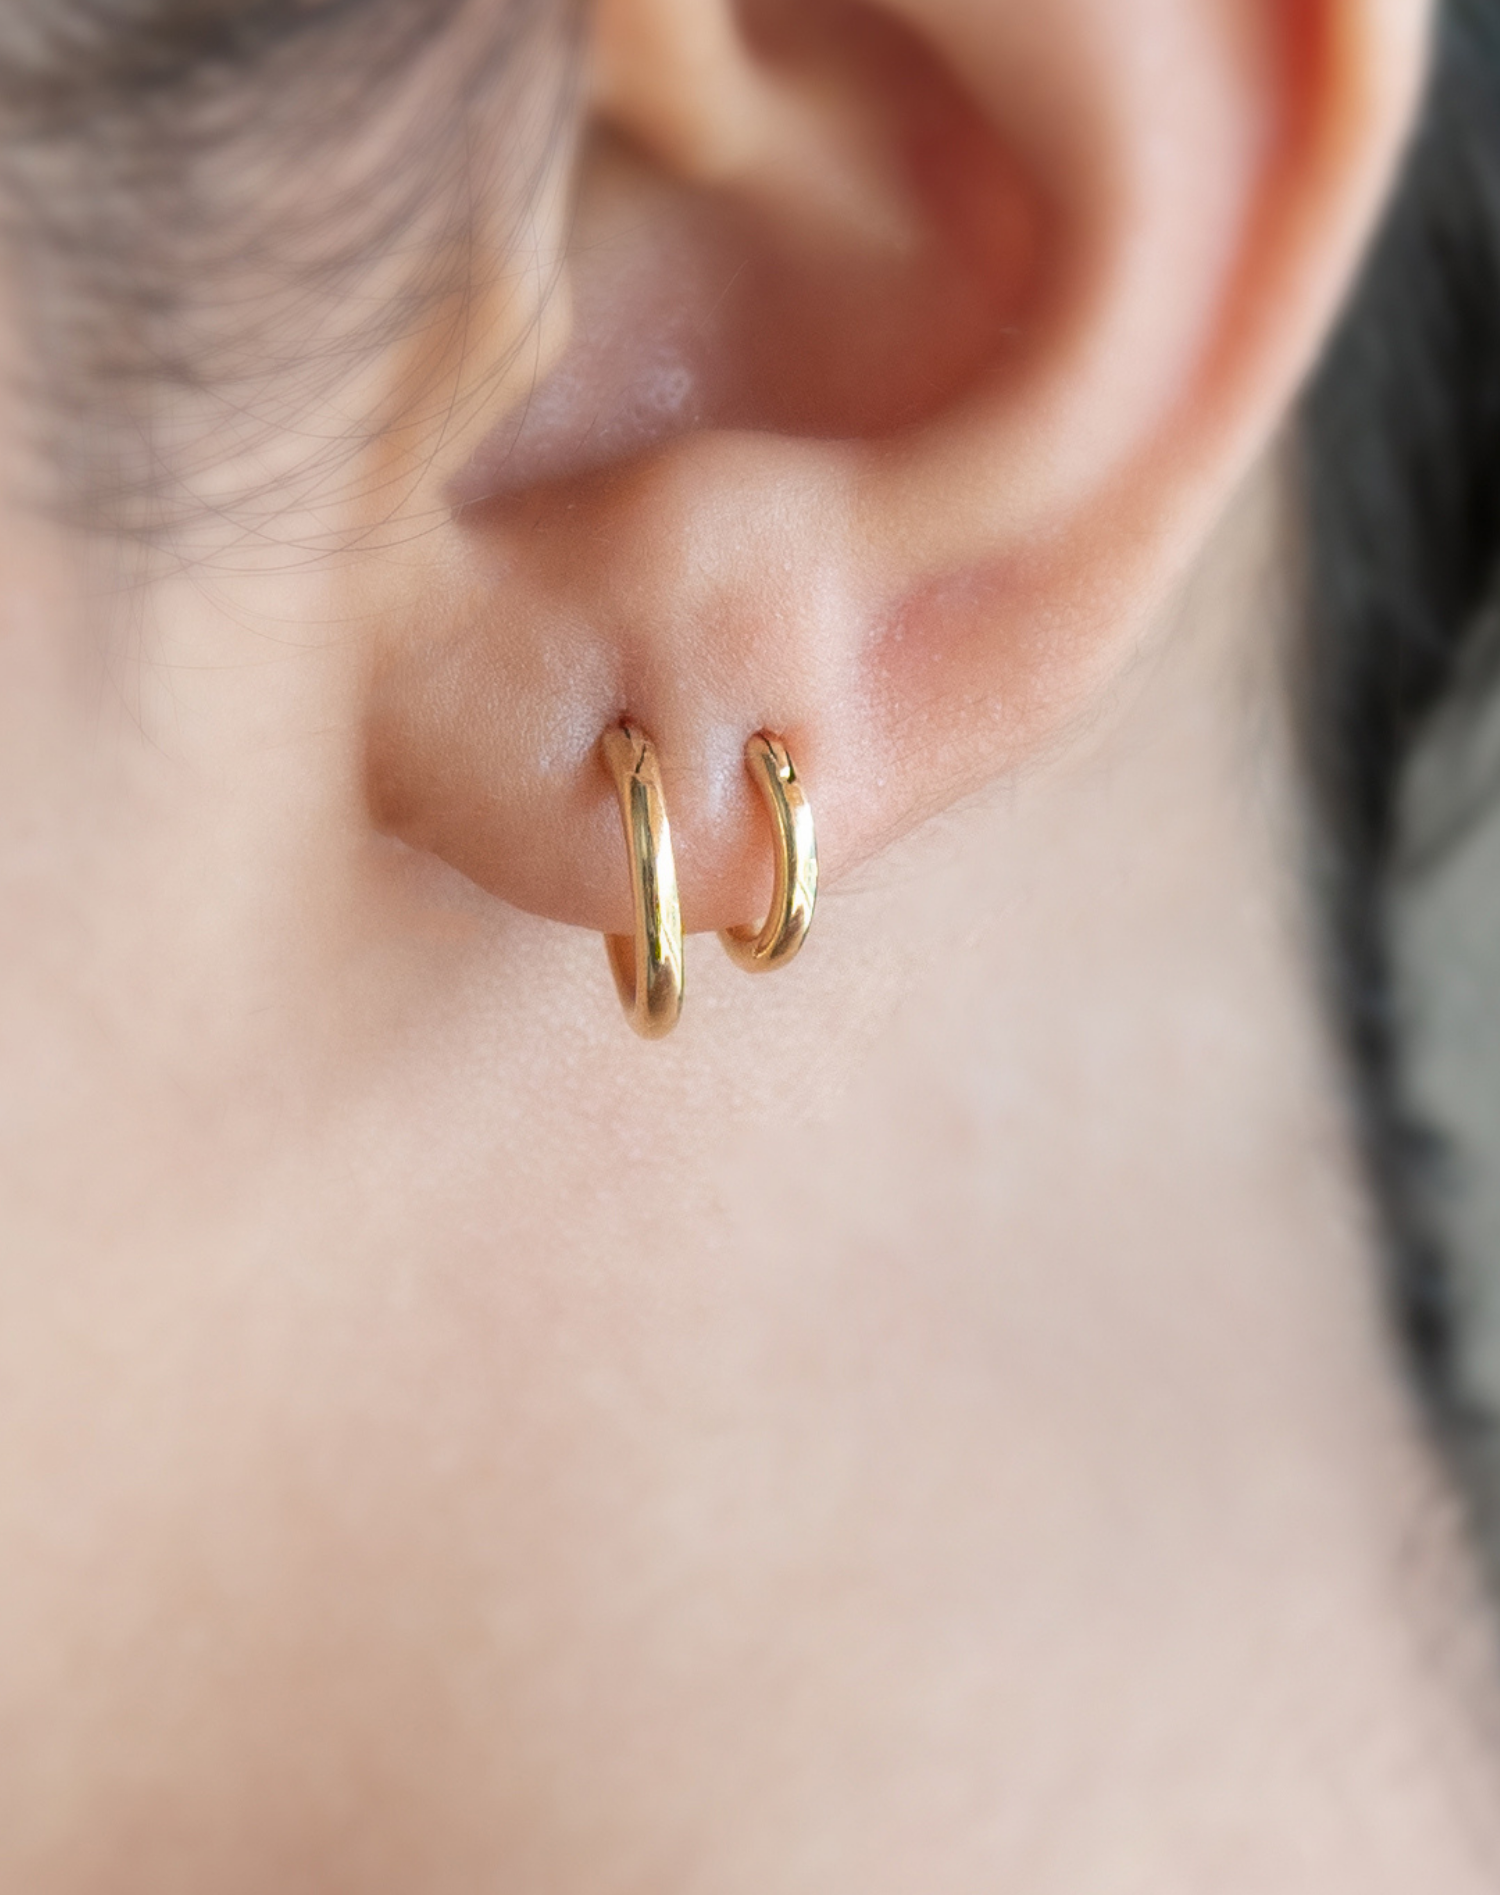 Minimalist  Dainty CZ Second Hole Huggie Hoop Earrings Two  Etsy  Ear  jewelry Stud earrings Ear piercings